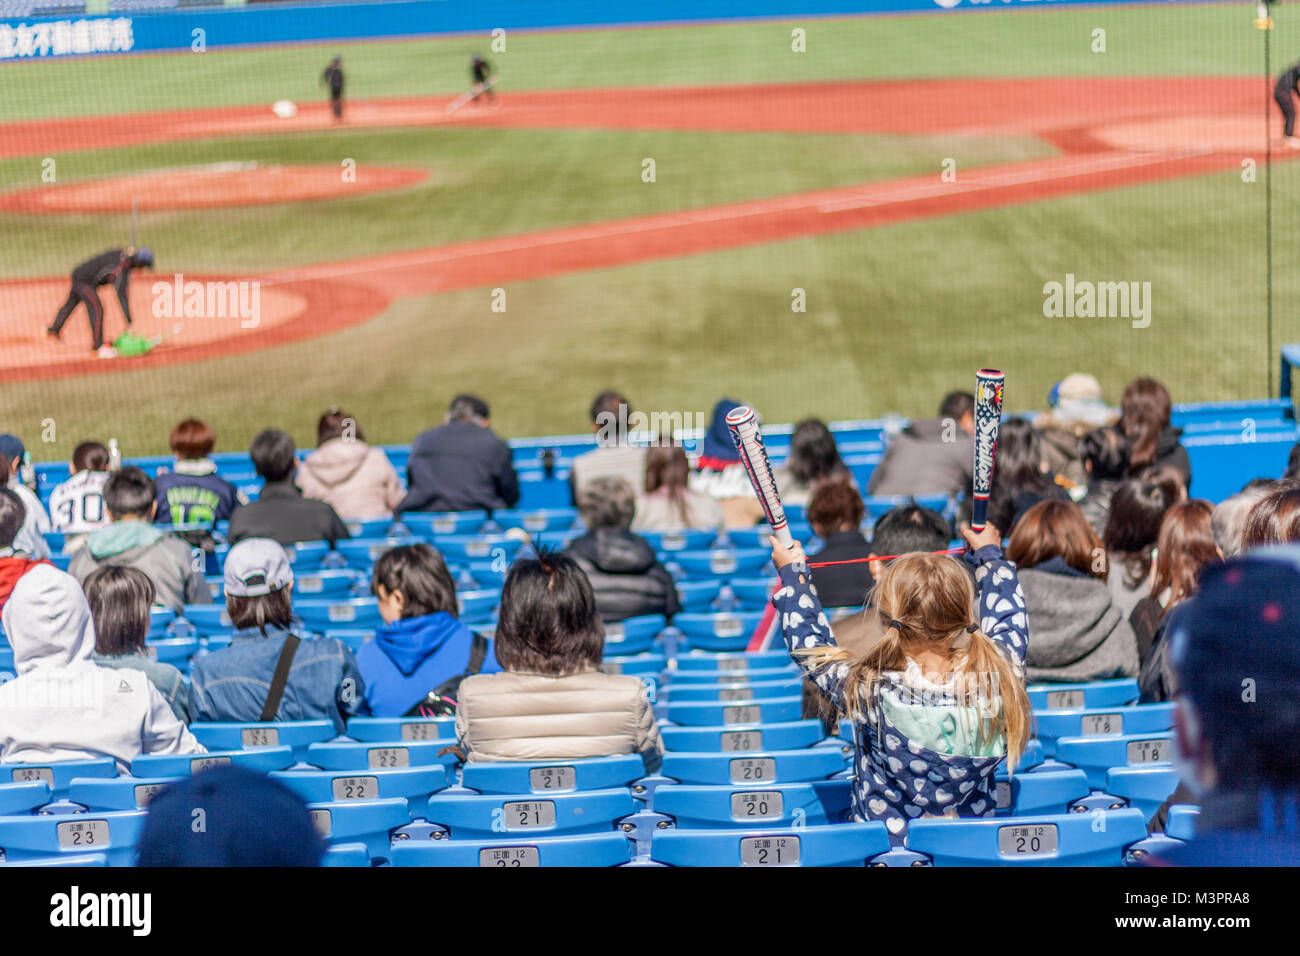 Young blonde girl cheering at Japanese baseball Stock Photo